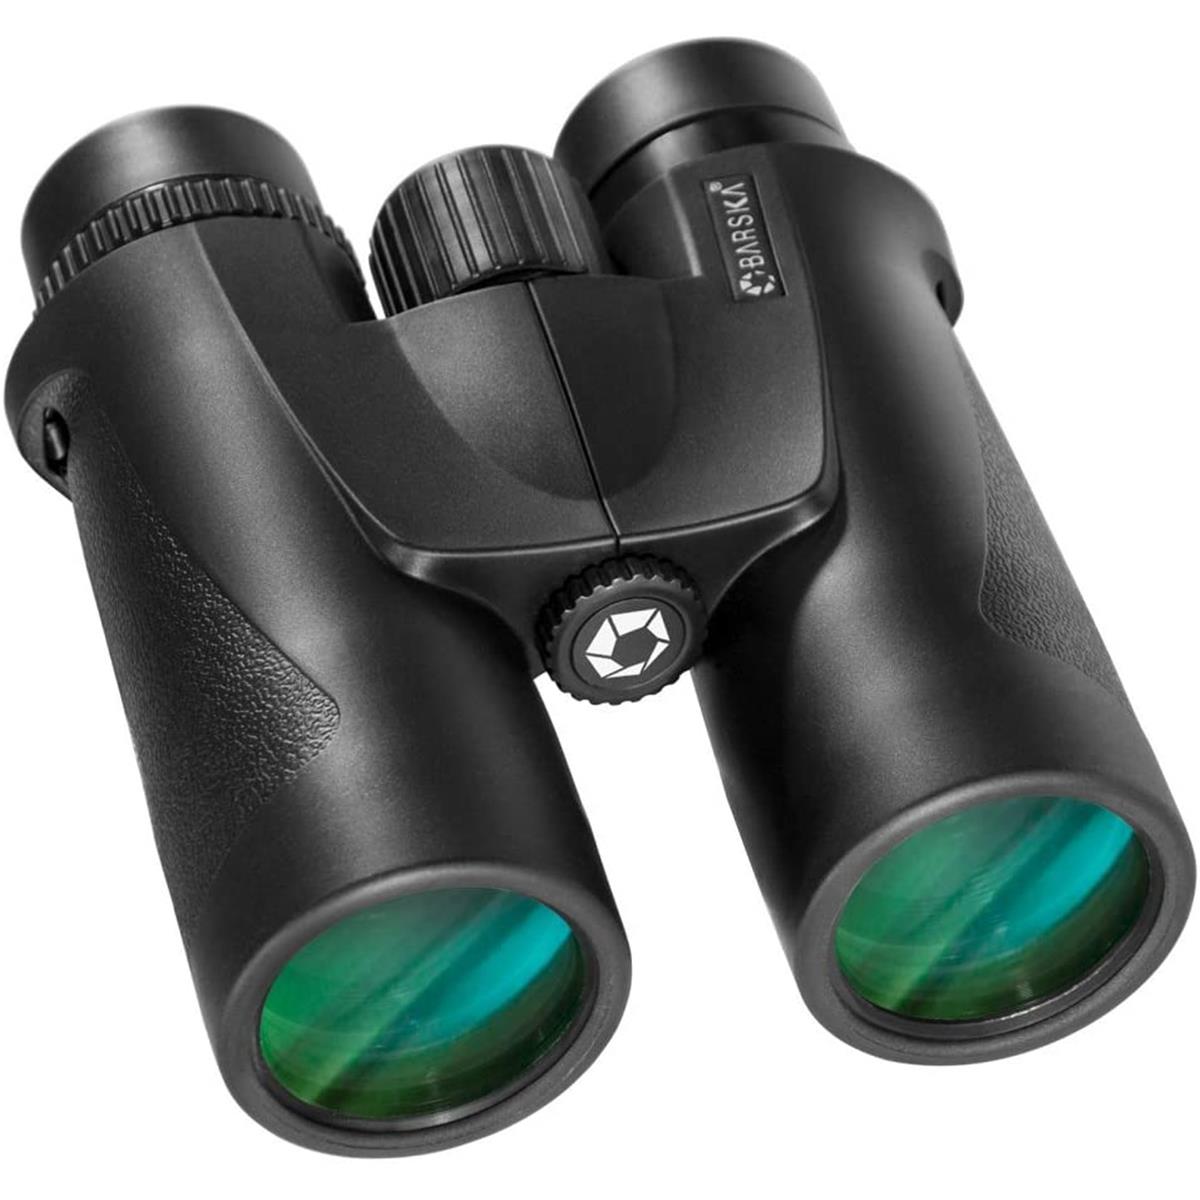 Picture of Barska AB12157 10 x 42 mm Colorado Waterproof Binoculars with Clamshell Pack - Black